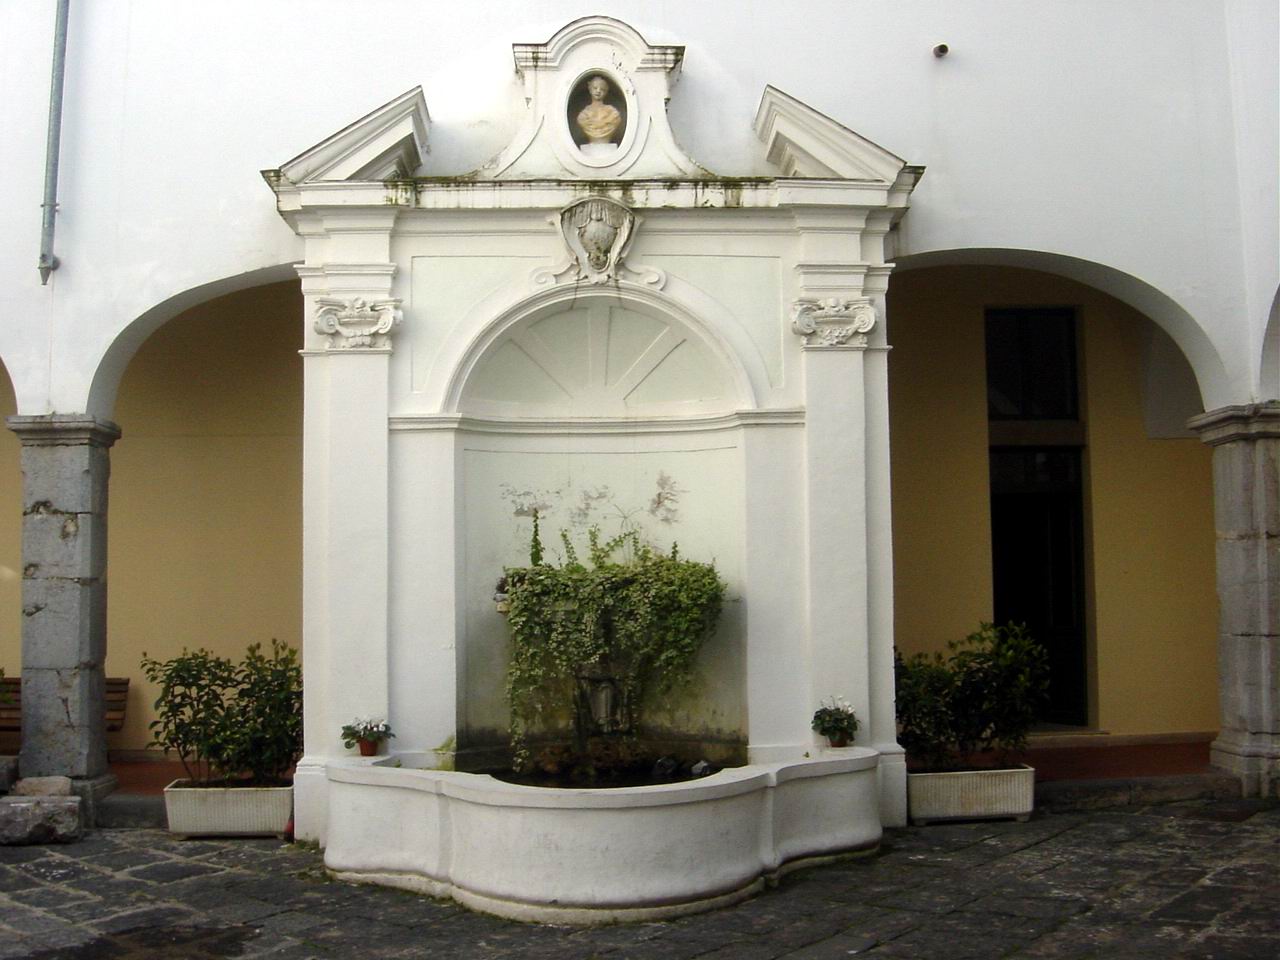 
  
    
      
      
          
Fontana ornamentale, Chiesa dell'Annunziatella 

    
  
          
